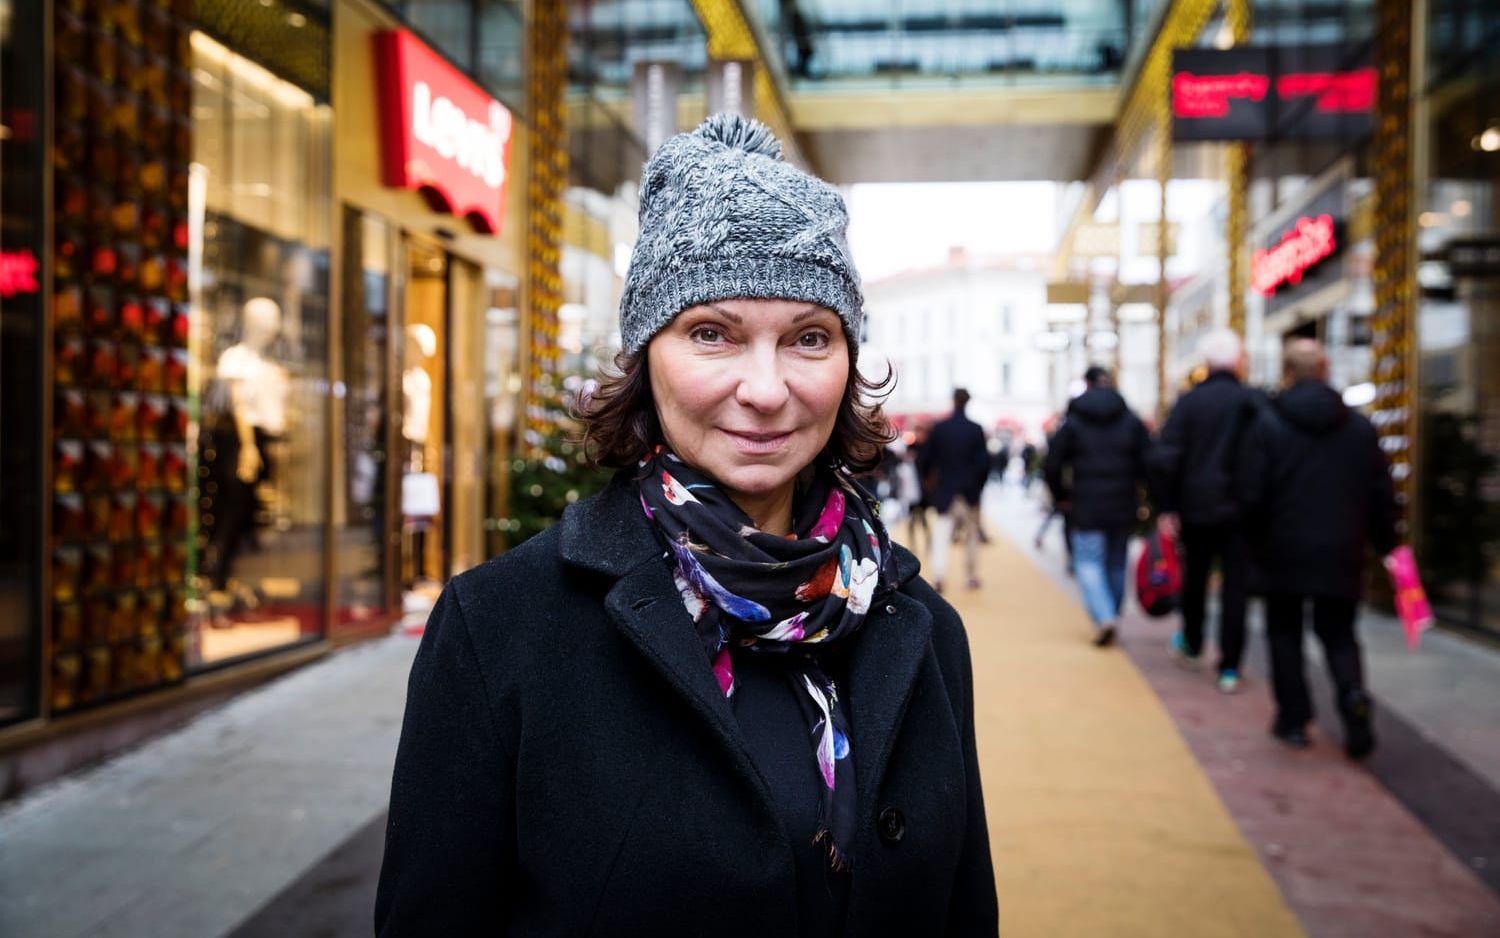 Nina Eriksson, 58, Örgryte: "Lägg ner julklappshetsen. Jag köper inga klappar, jag gillar inte det. Det är fel fokus på julen. Jag vill hellre fokusera på att vara tillsammans och njuta och äta god mat."